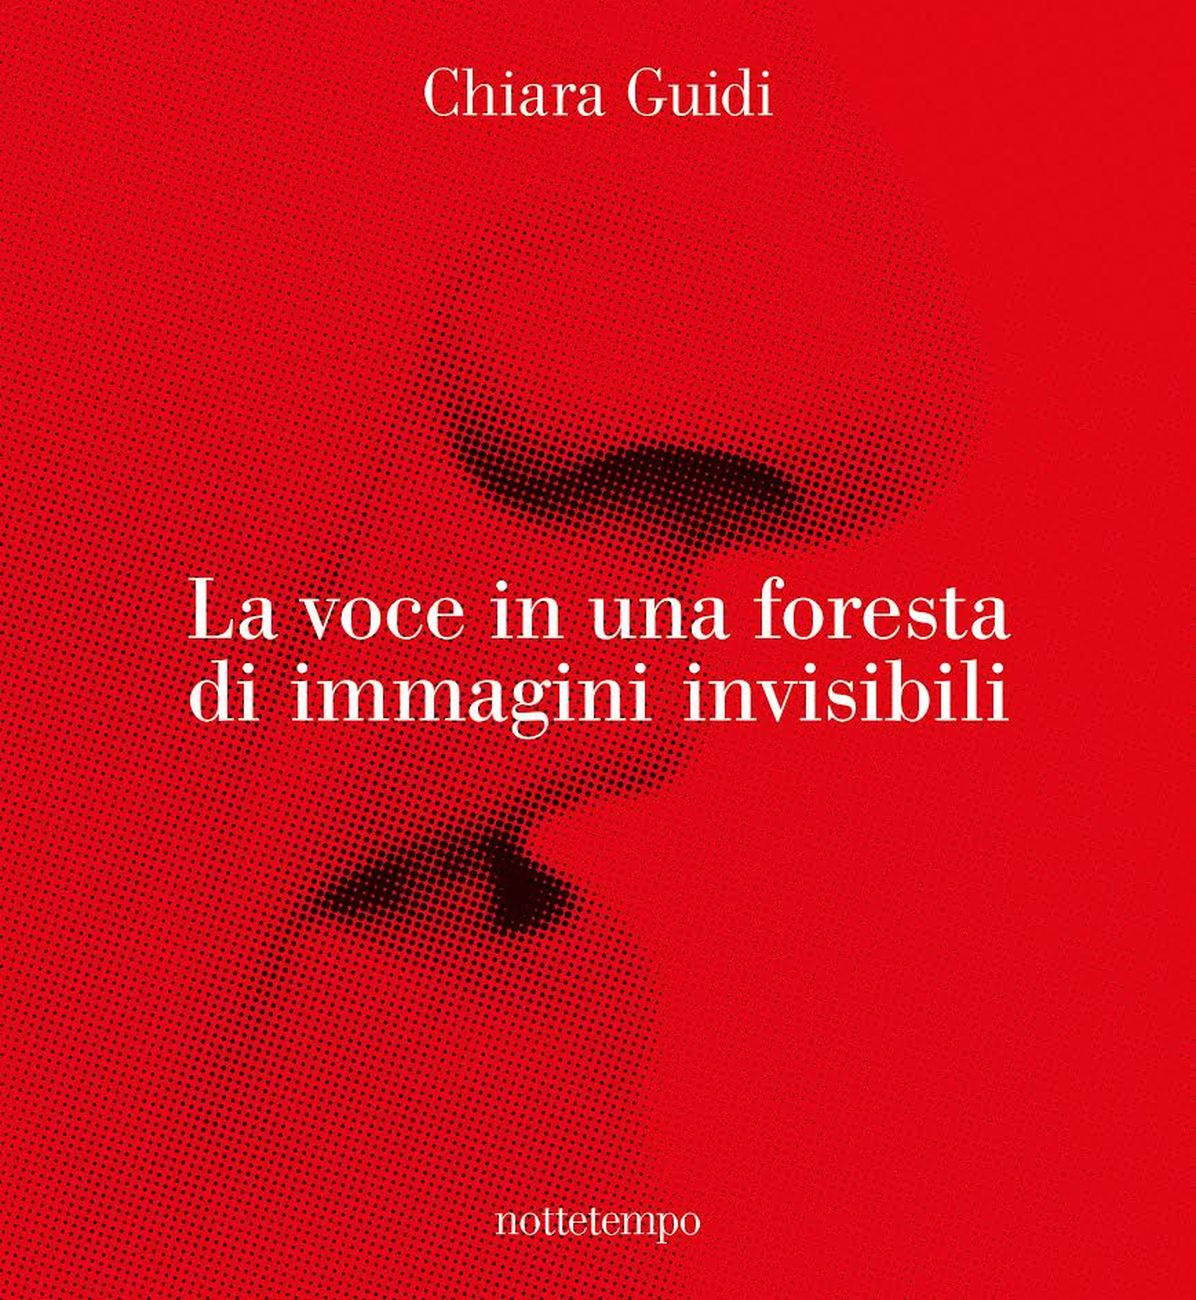 Chiara Guidi ‒ La voce in una foresta di immagini invisibili (Nottetempo, Milano 2017)